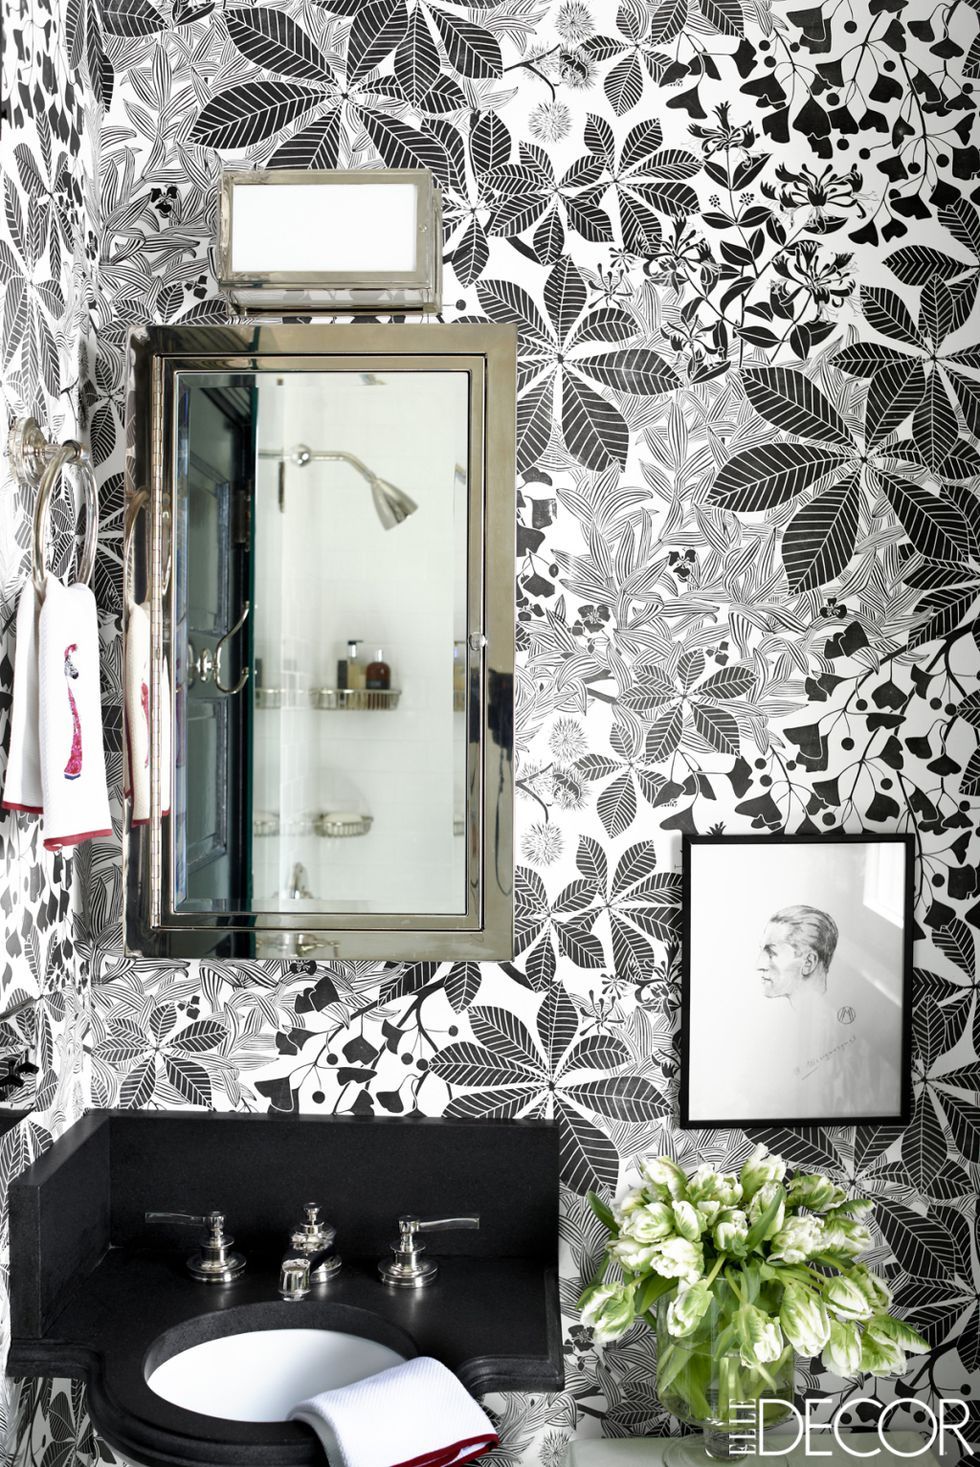 315102 Bathroom Wallpaper Images Stock Photos  Vectors  Shutterstock